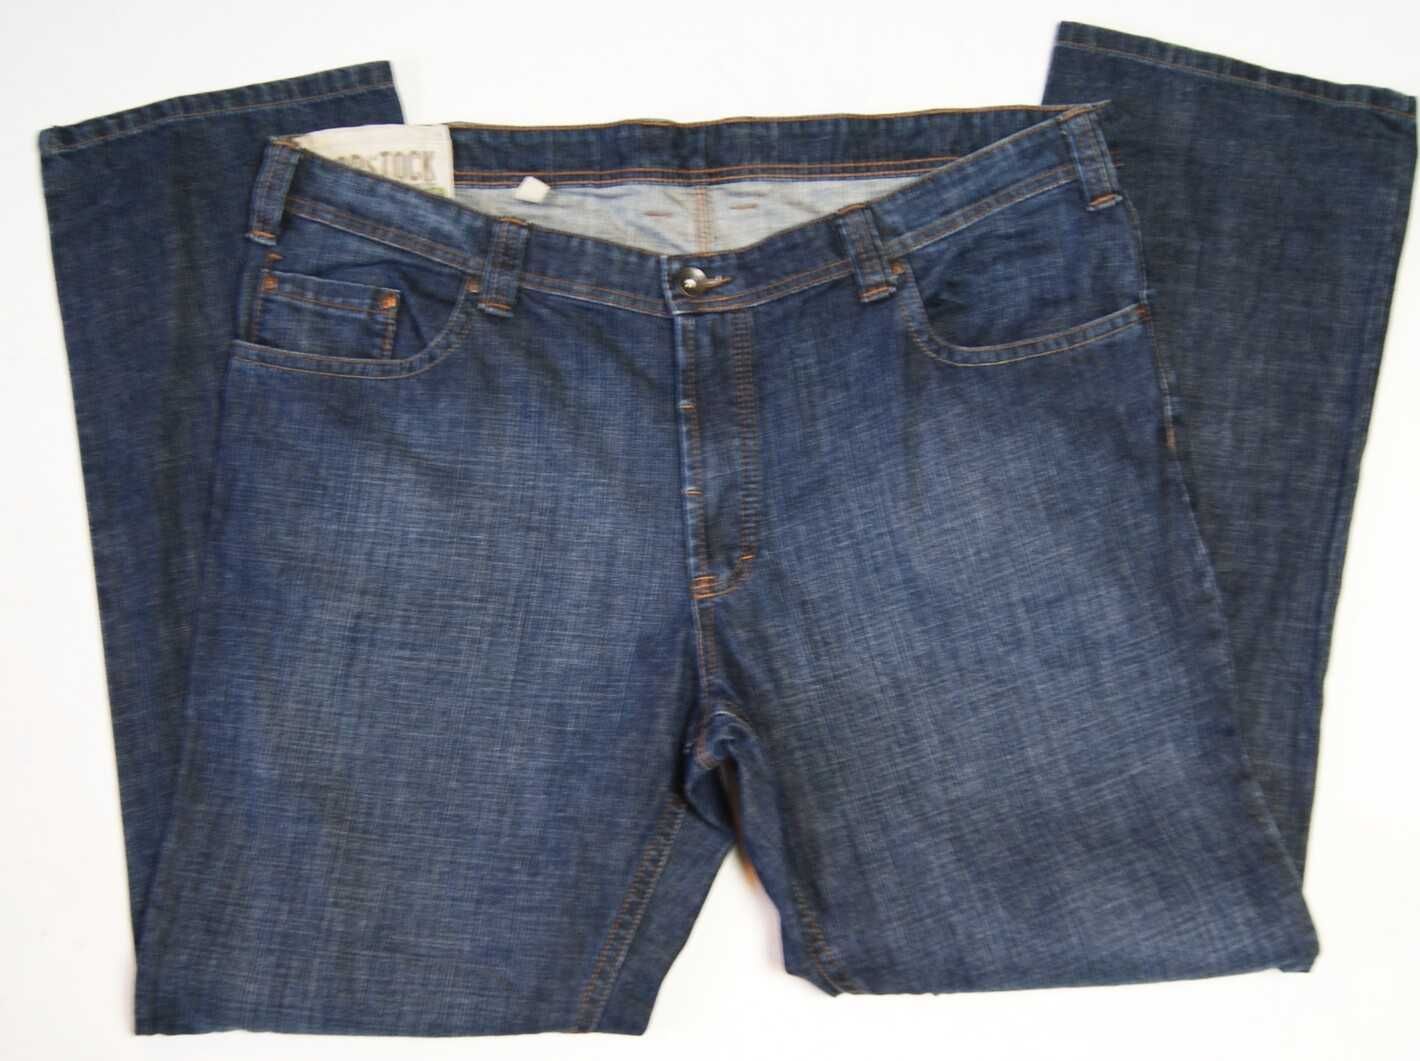 CAMEL ACTIVE WOODSTOCK 60 PAS 114 jeansy męskie jak nowe